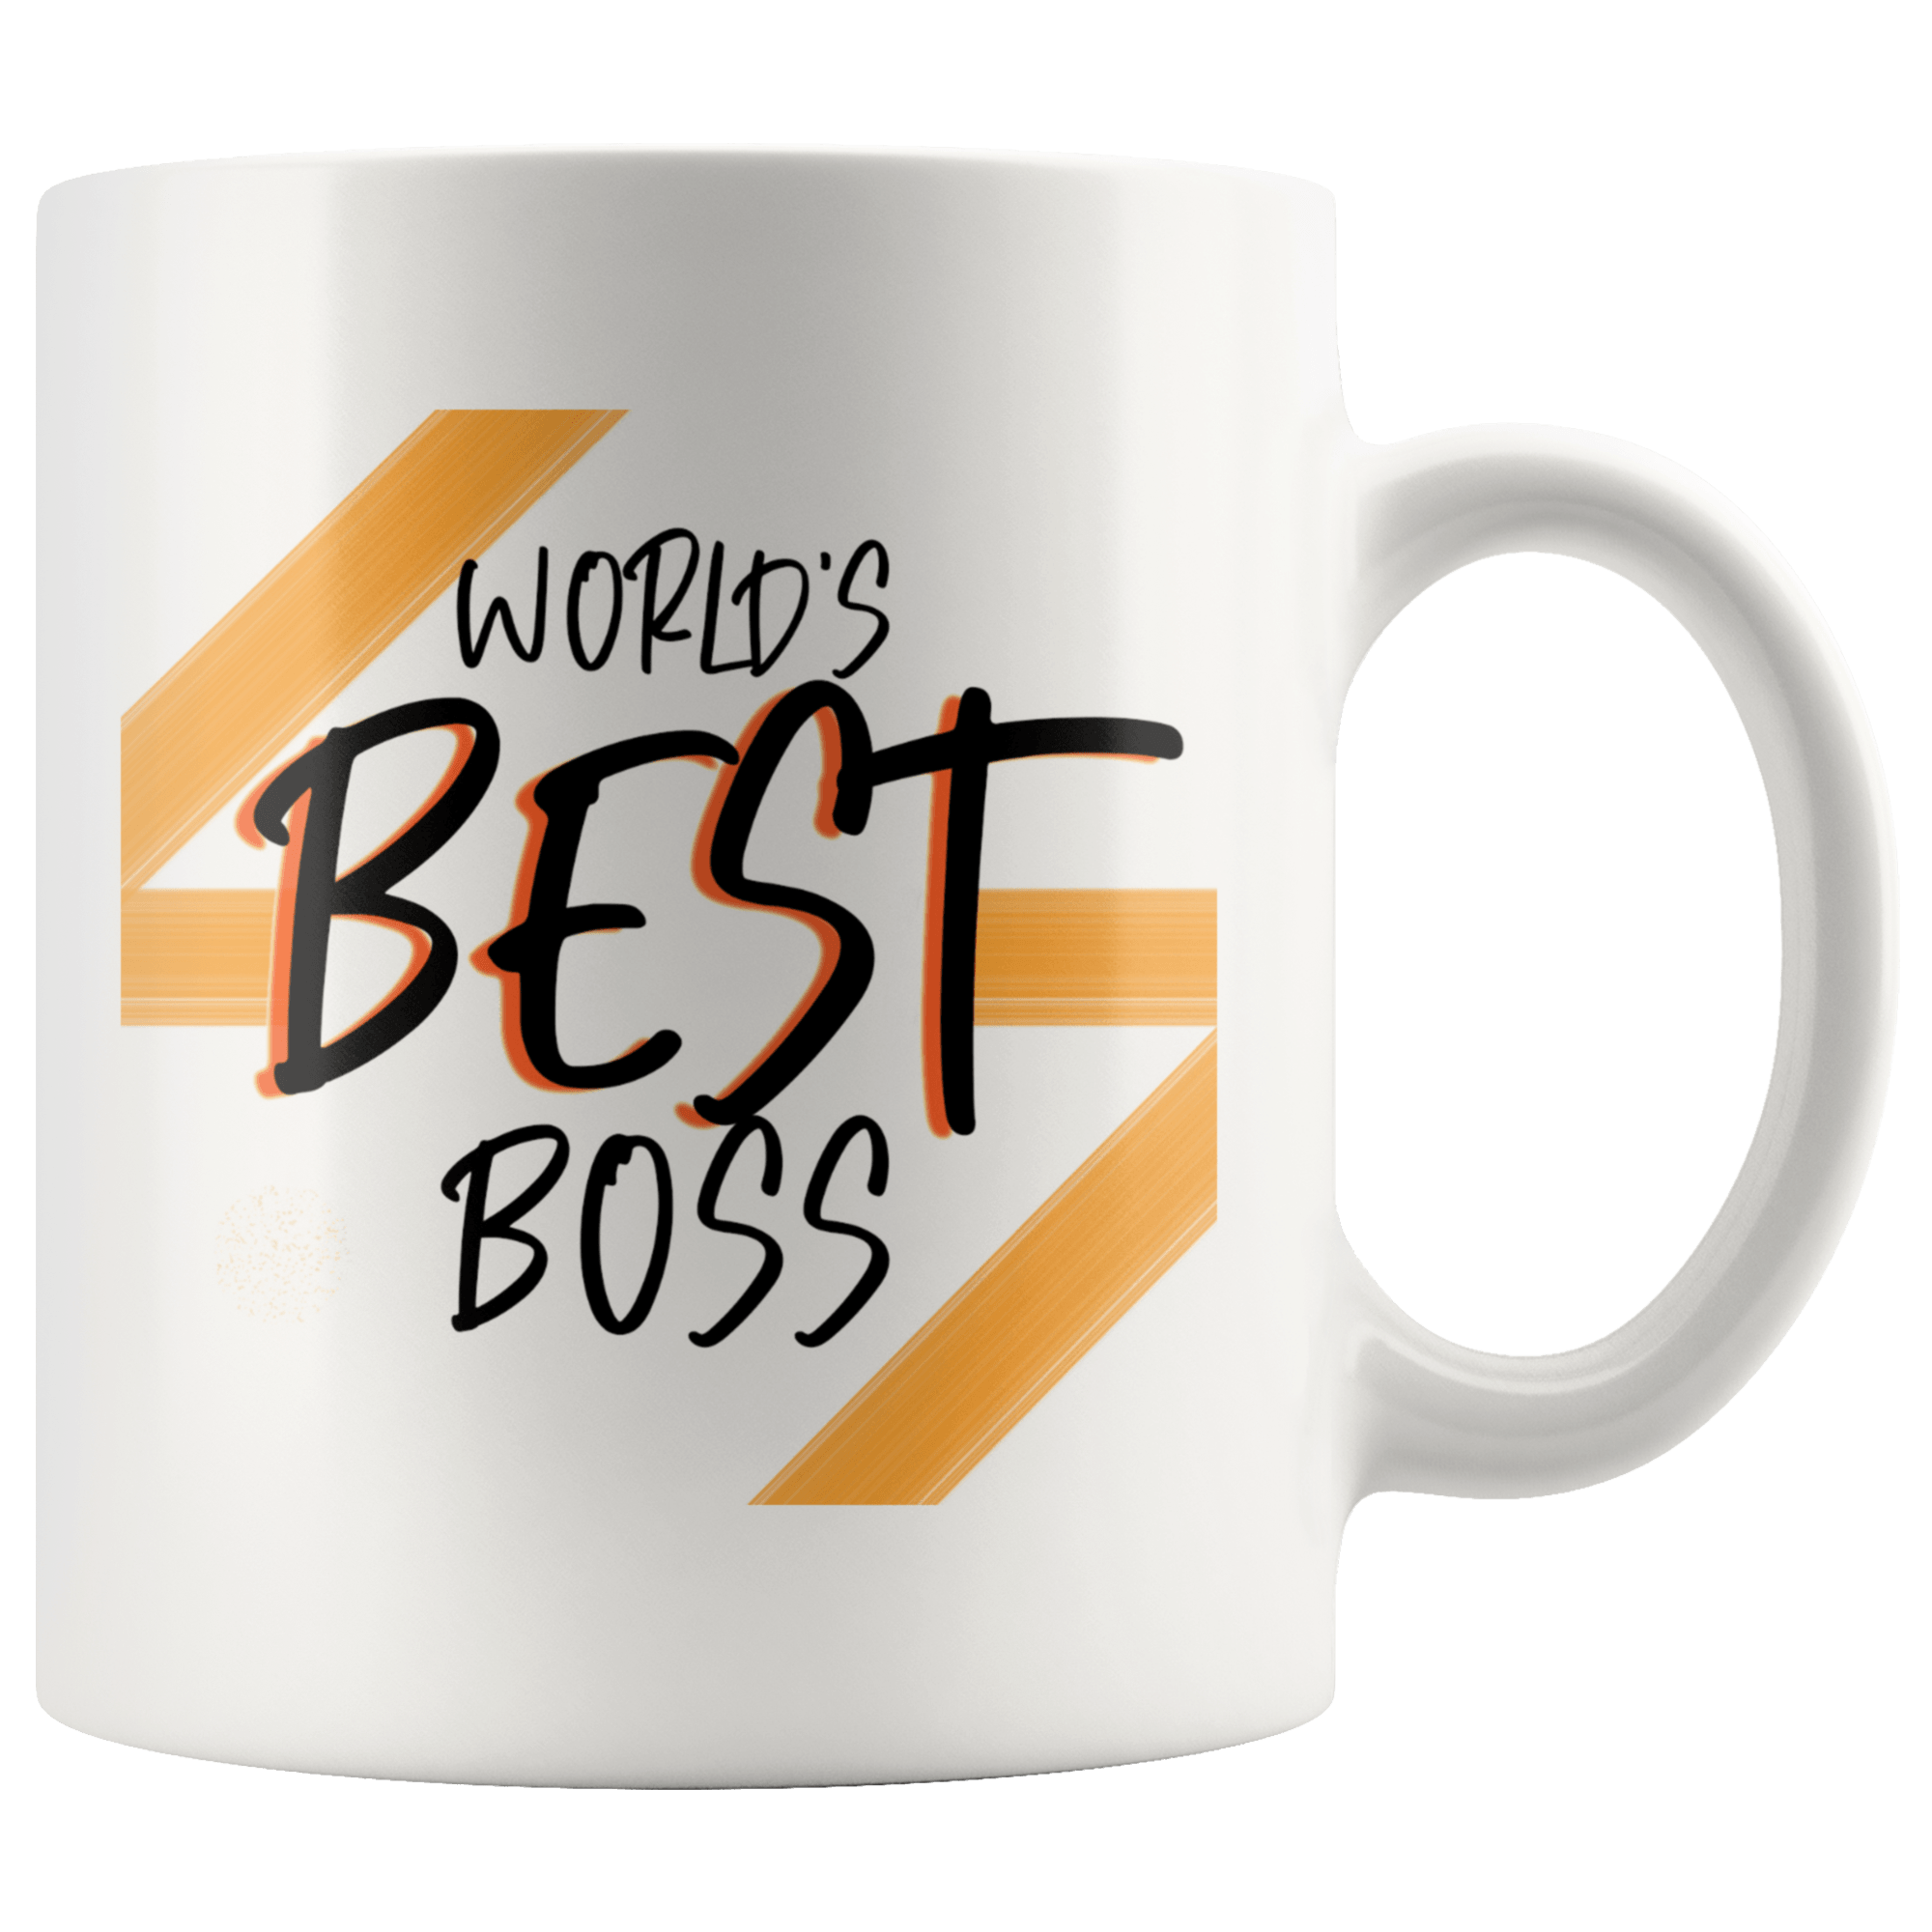 World's Best Boss Coffee Mug - Coffee Cups Gift Idea For Men & Women Boss - SPCM